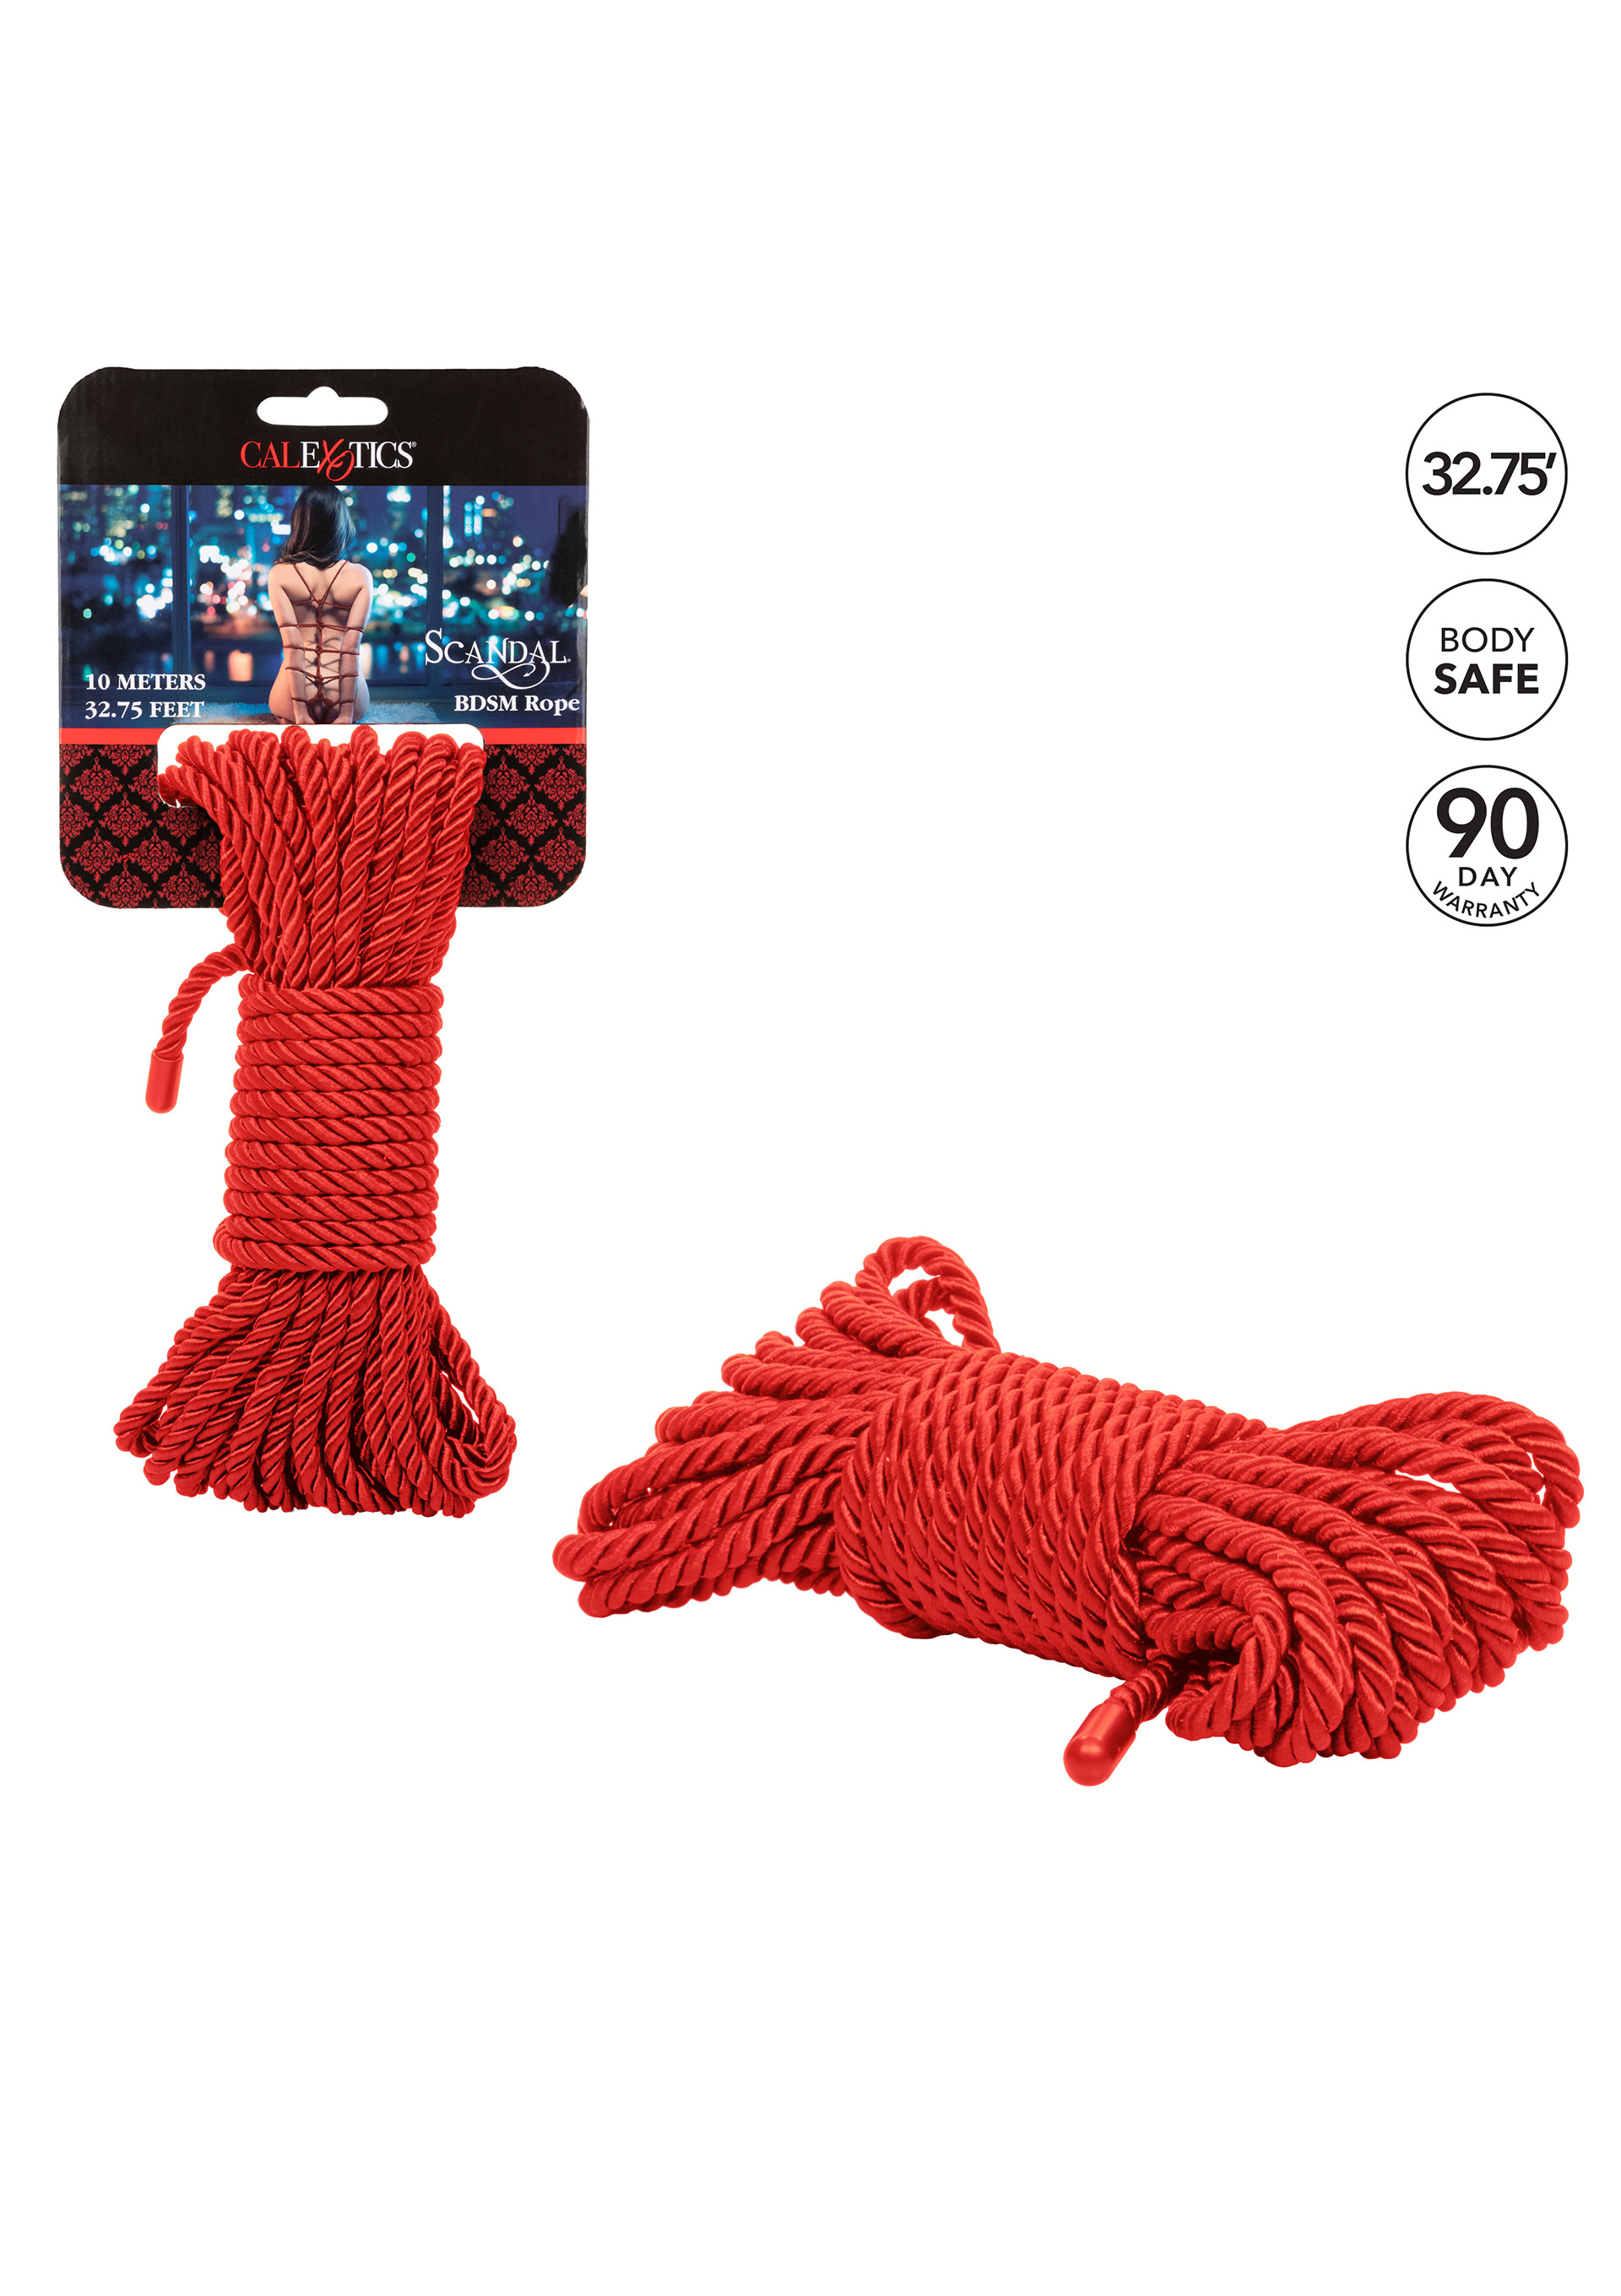 Scandal - Scandal BDSM Rope 10M Red